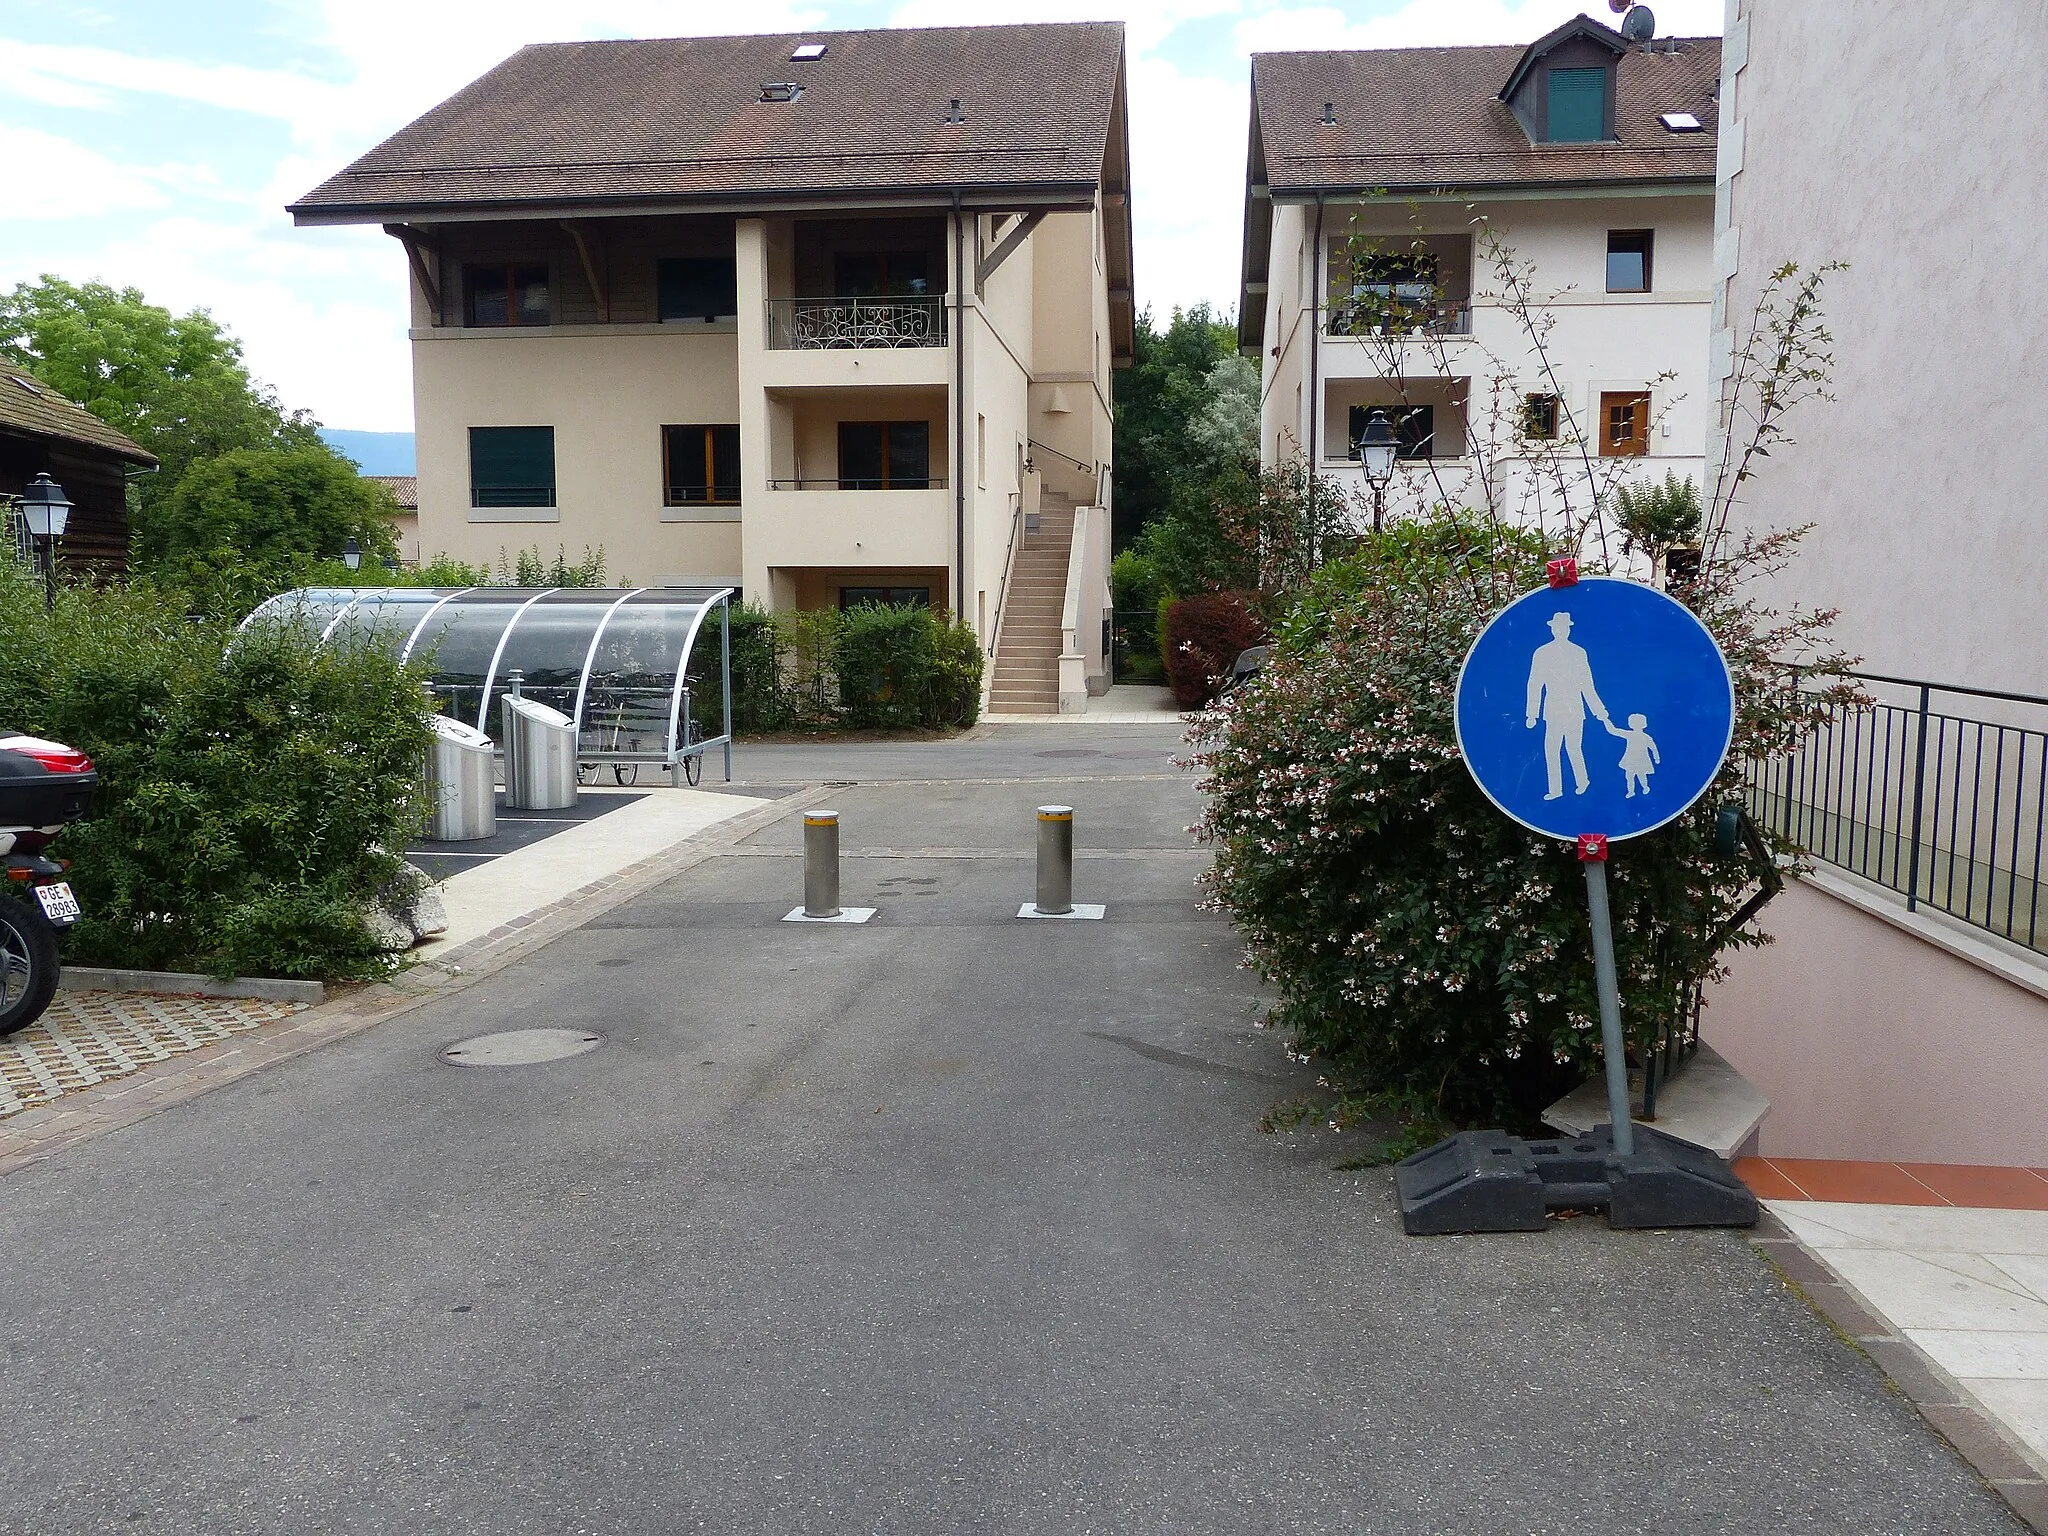 Photo showing: Panneau 2.61 (chemin pour piétons), route de Meinier, Vandœuvres, canton de Genève, Suisse.